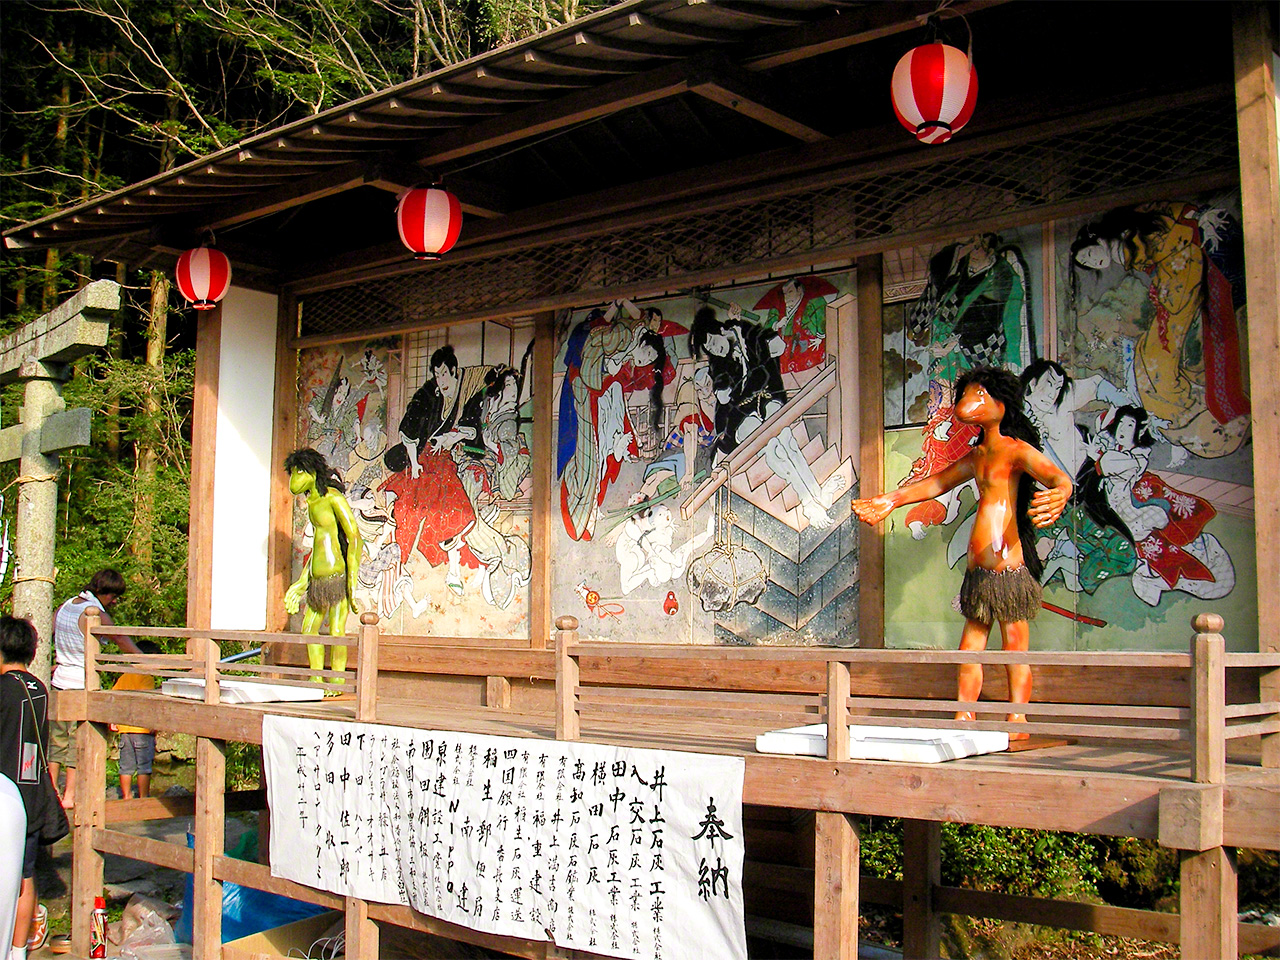 Le sanctuaire Kahaku, à Nankoku, dans la préfecture de Kôchi, tient un festival kappa chaque année, d’après la légende d’un de ces monstres qui, attrapé en train d’essayer de noyer un cheval dans la rivière, a finalement été gracié par le grand prêtre du sanctuaire. Il a ensuite juré de ne plus jamais noyer de villageois à l’avenir, avant d’être célébré comme une divinité. (Avec l'aimable autorisation de Kagawa Masanobu)